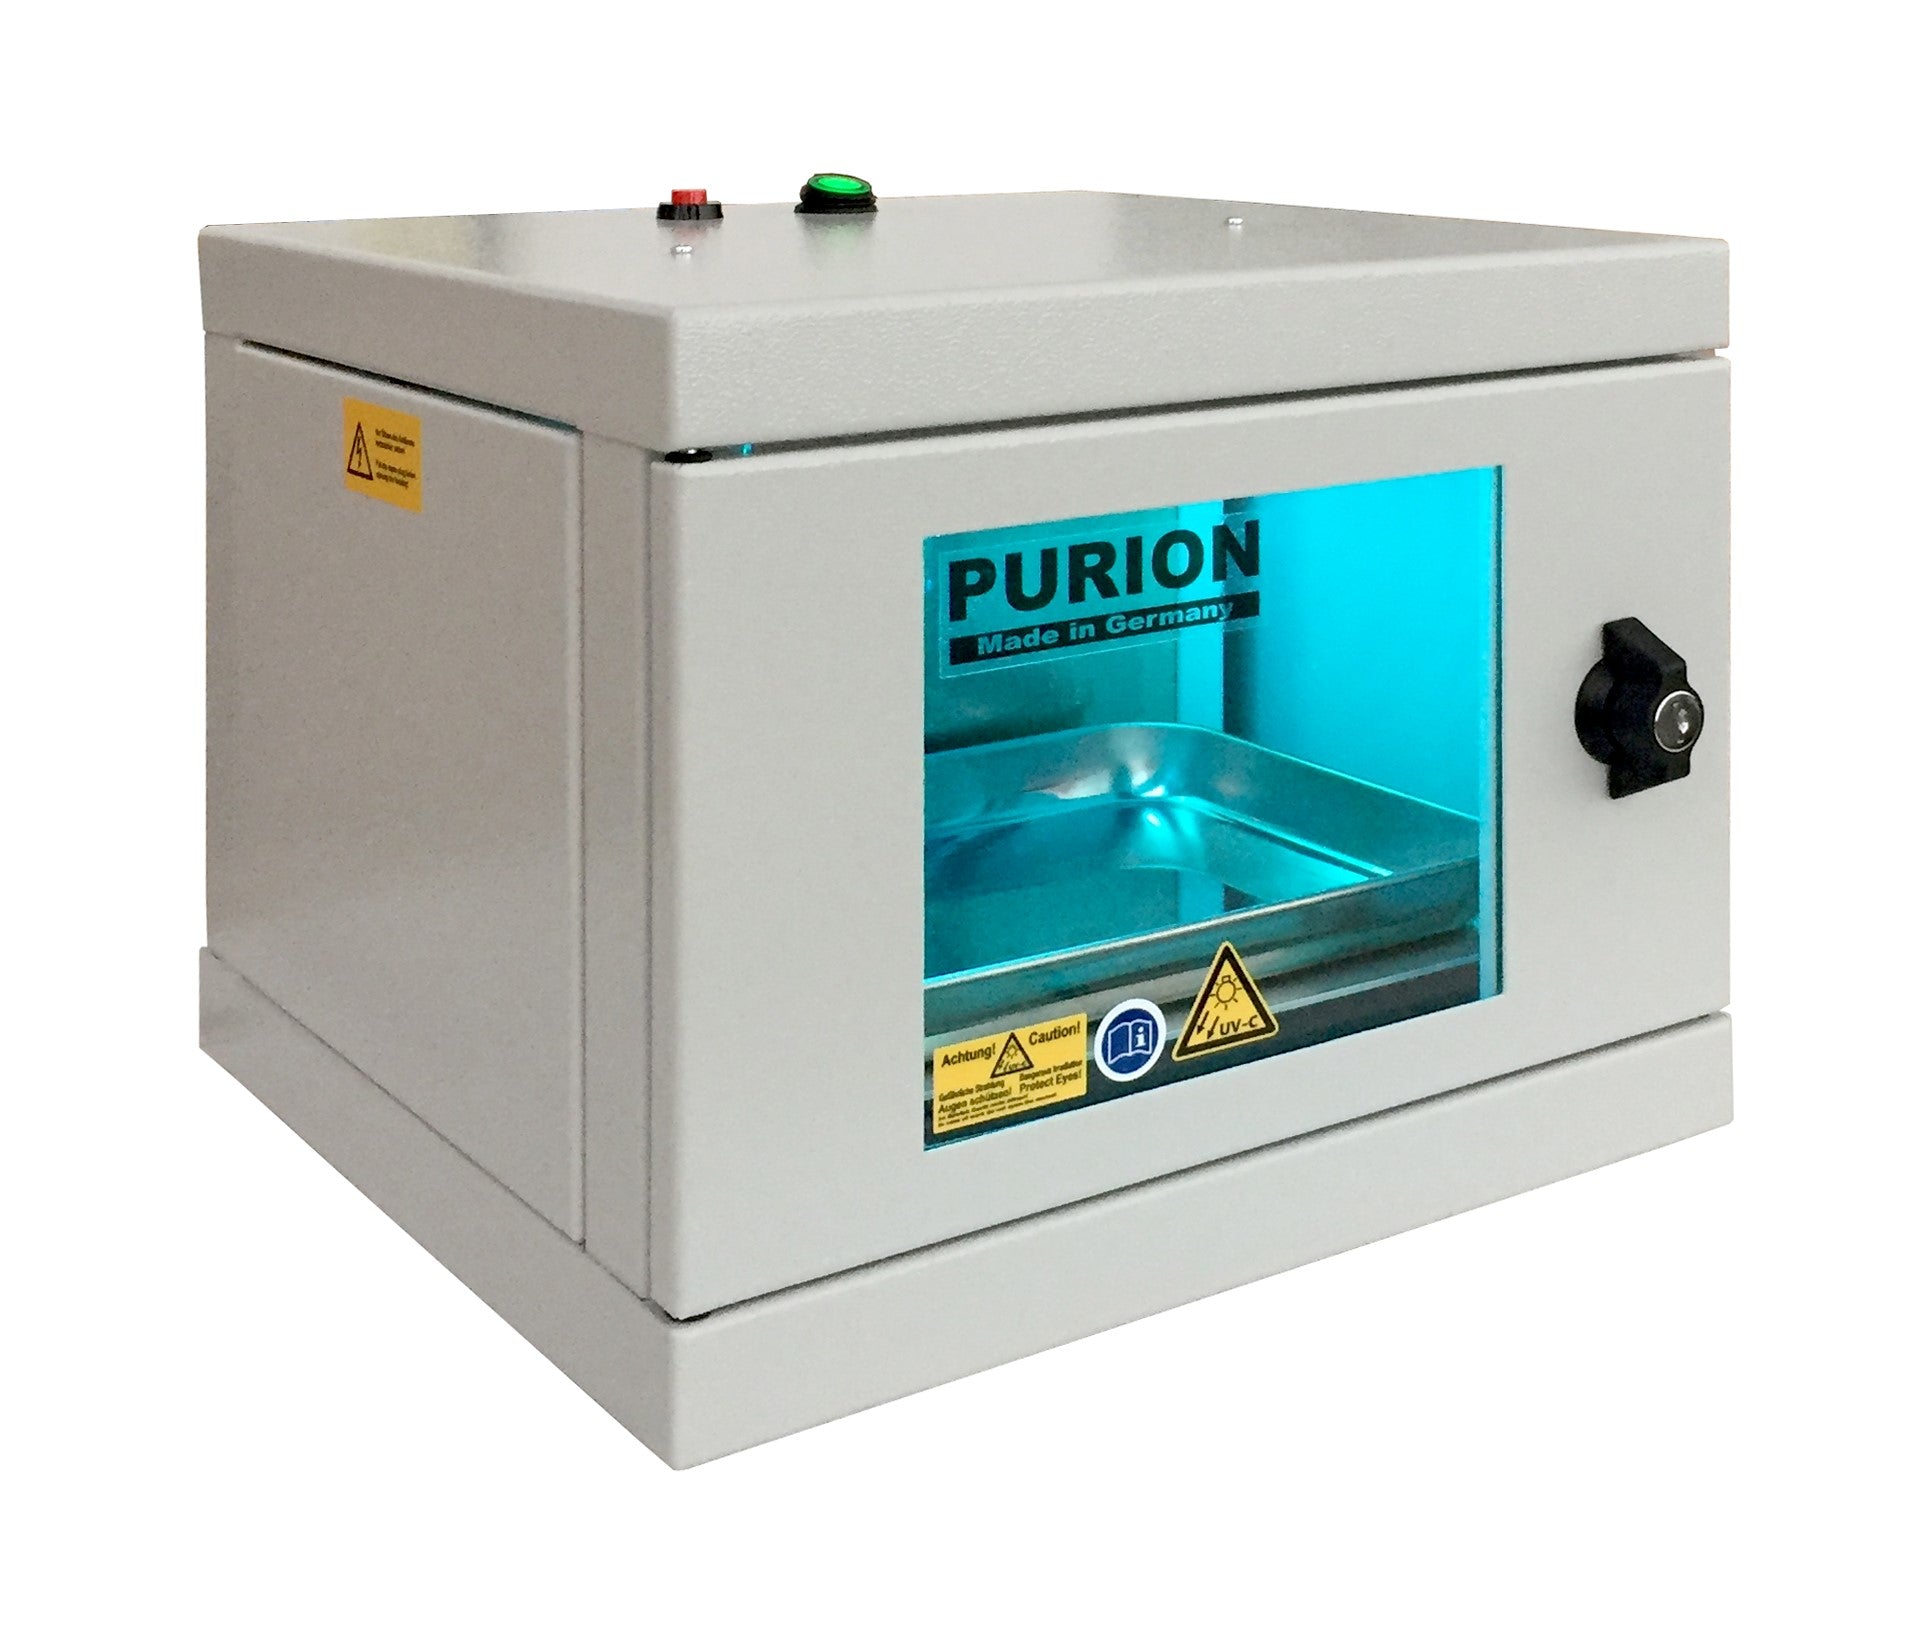 Die PURION UVC Box Small Basic der PURION GmbH zur Desinfektion gegen Keime.